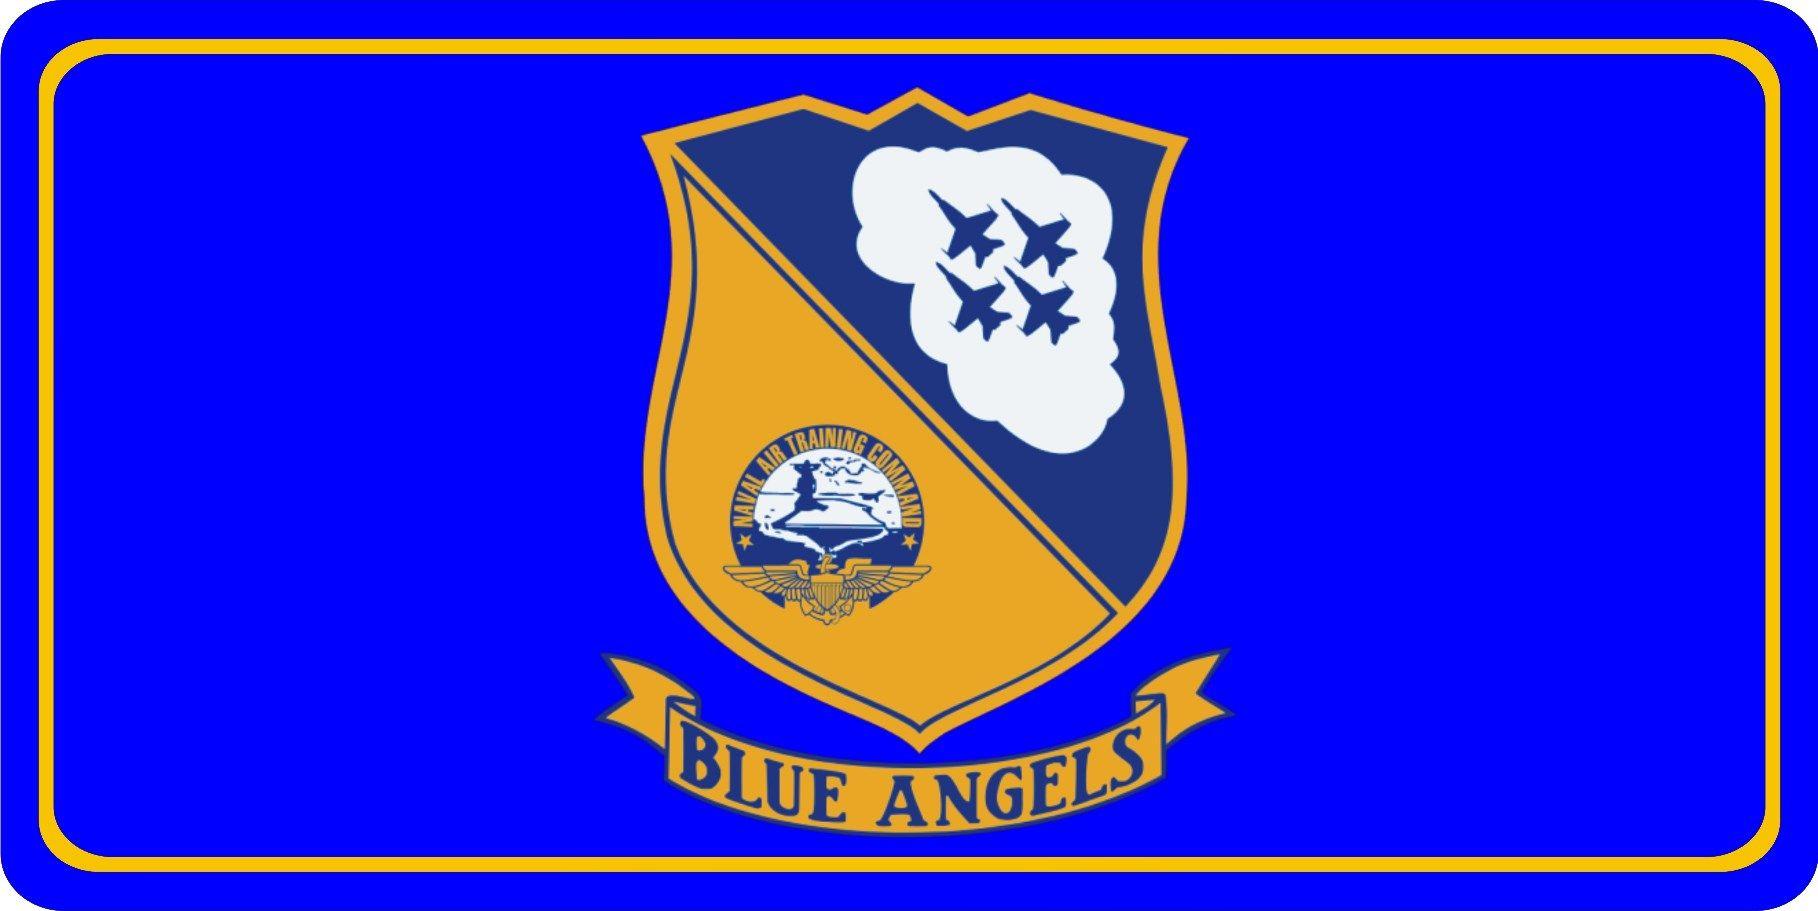 Naval Air Training Command Logo - Naval Air Training Command Blue Angels Photo License Plate Naval Air ...